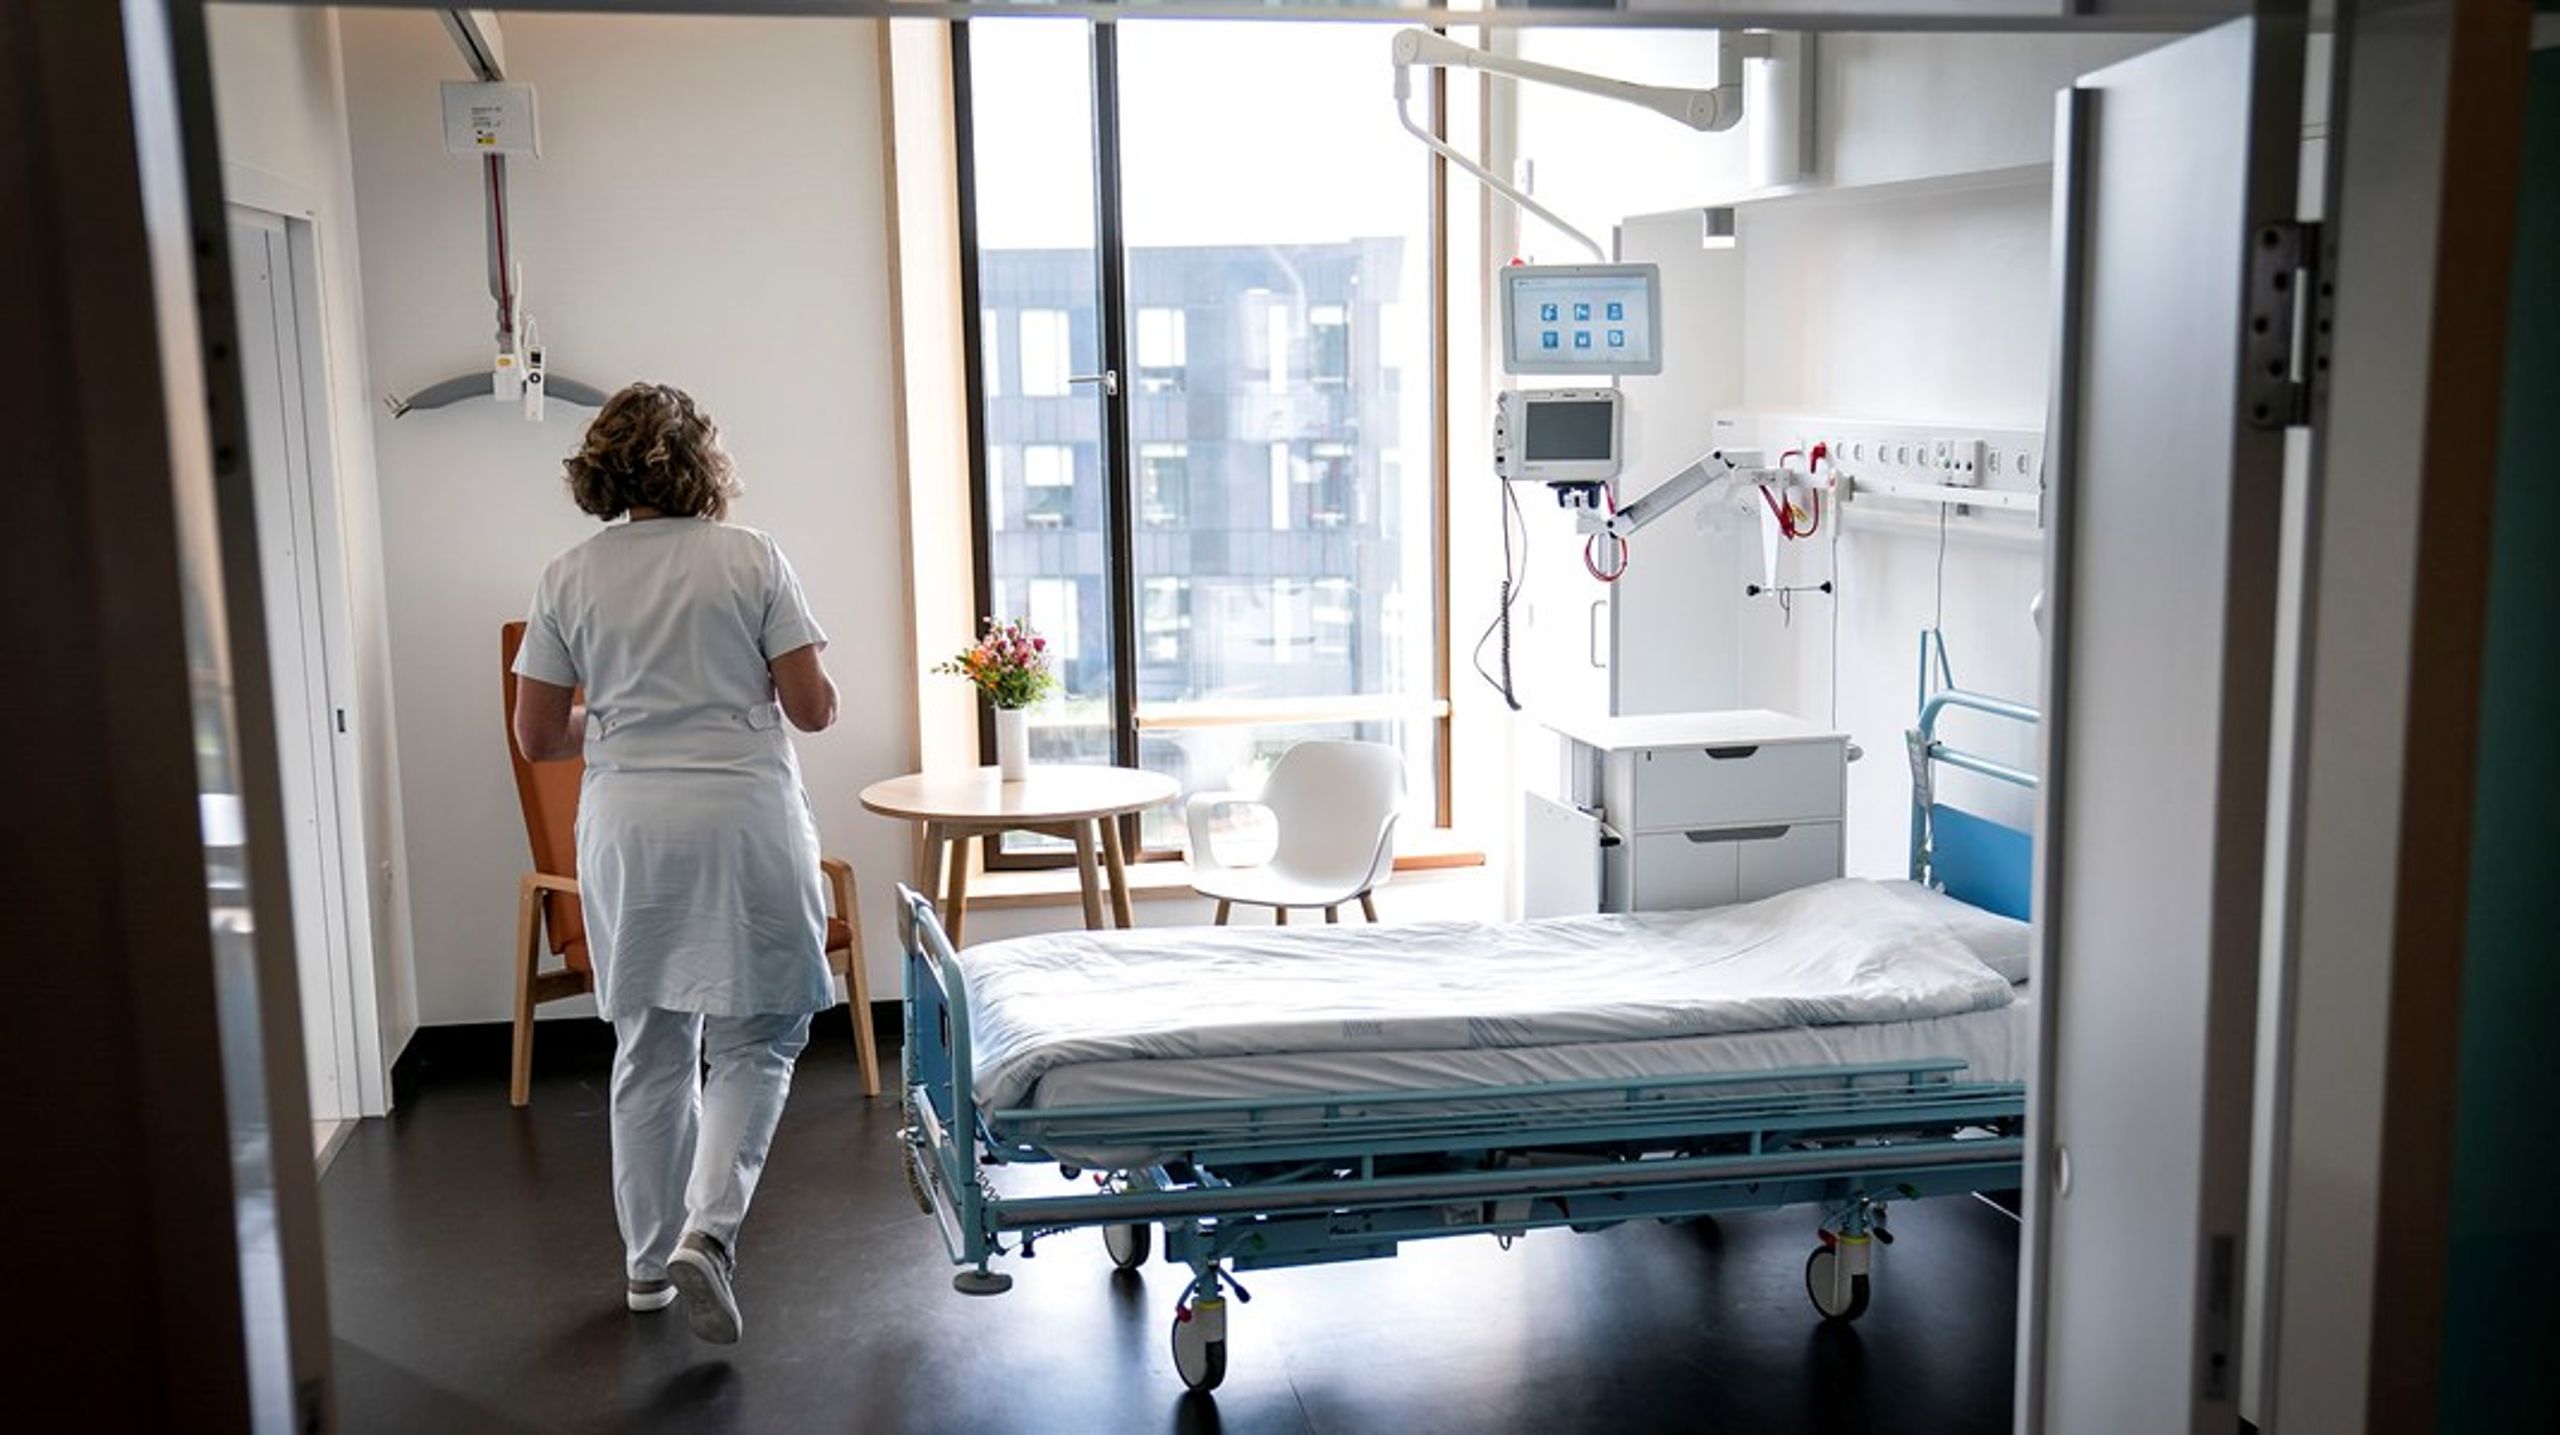 Ulighed i hospitalsystemet gør, at ikke alle danskere har samme muligheder for at overleve kræft, skriver Ida Sofie Jensen og Tina Christensen.